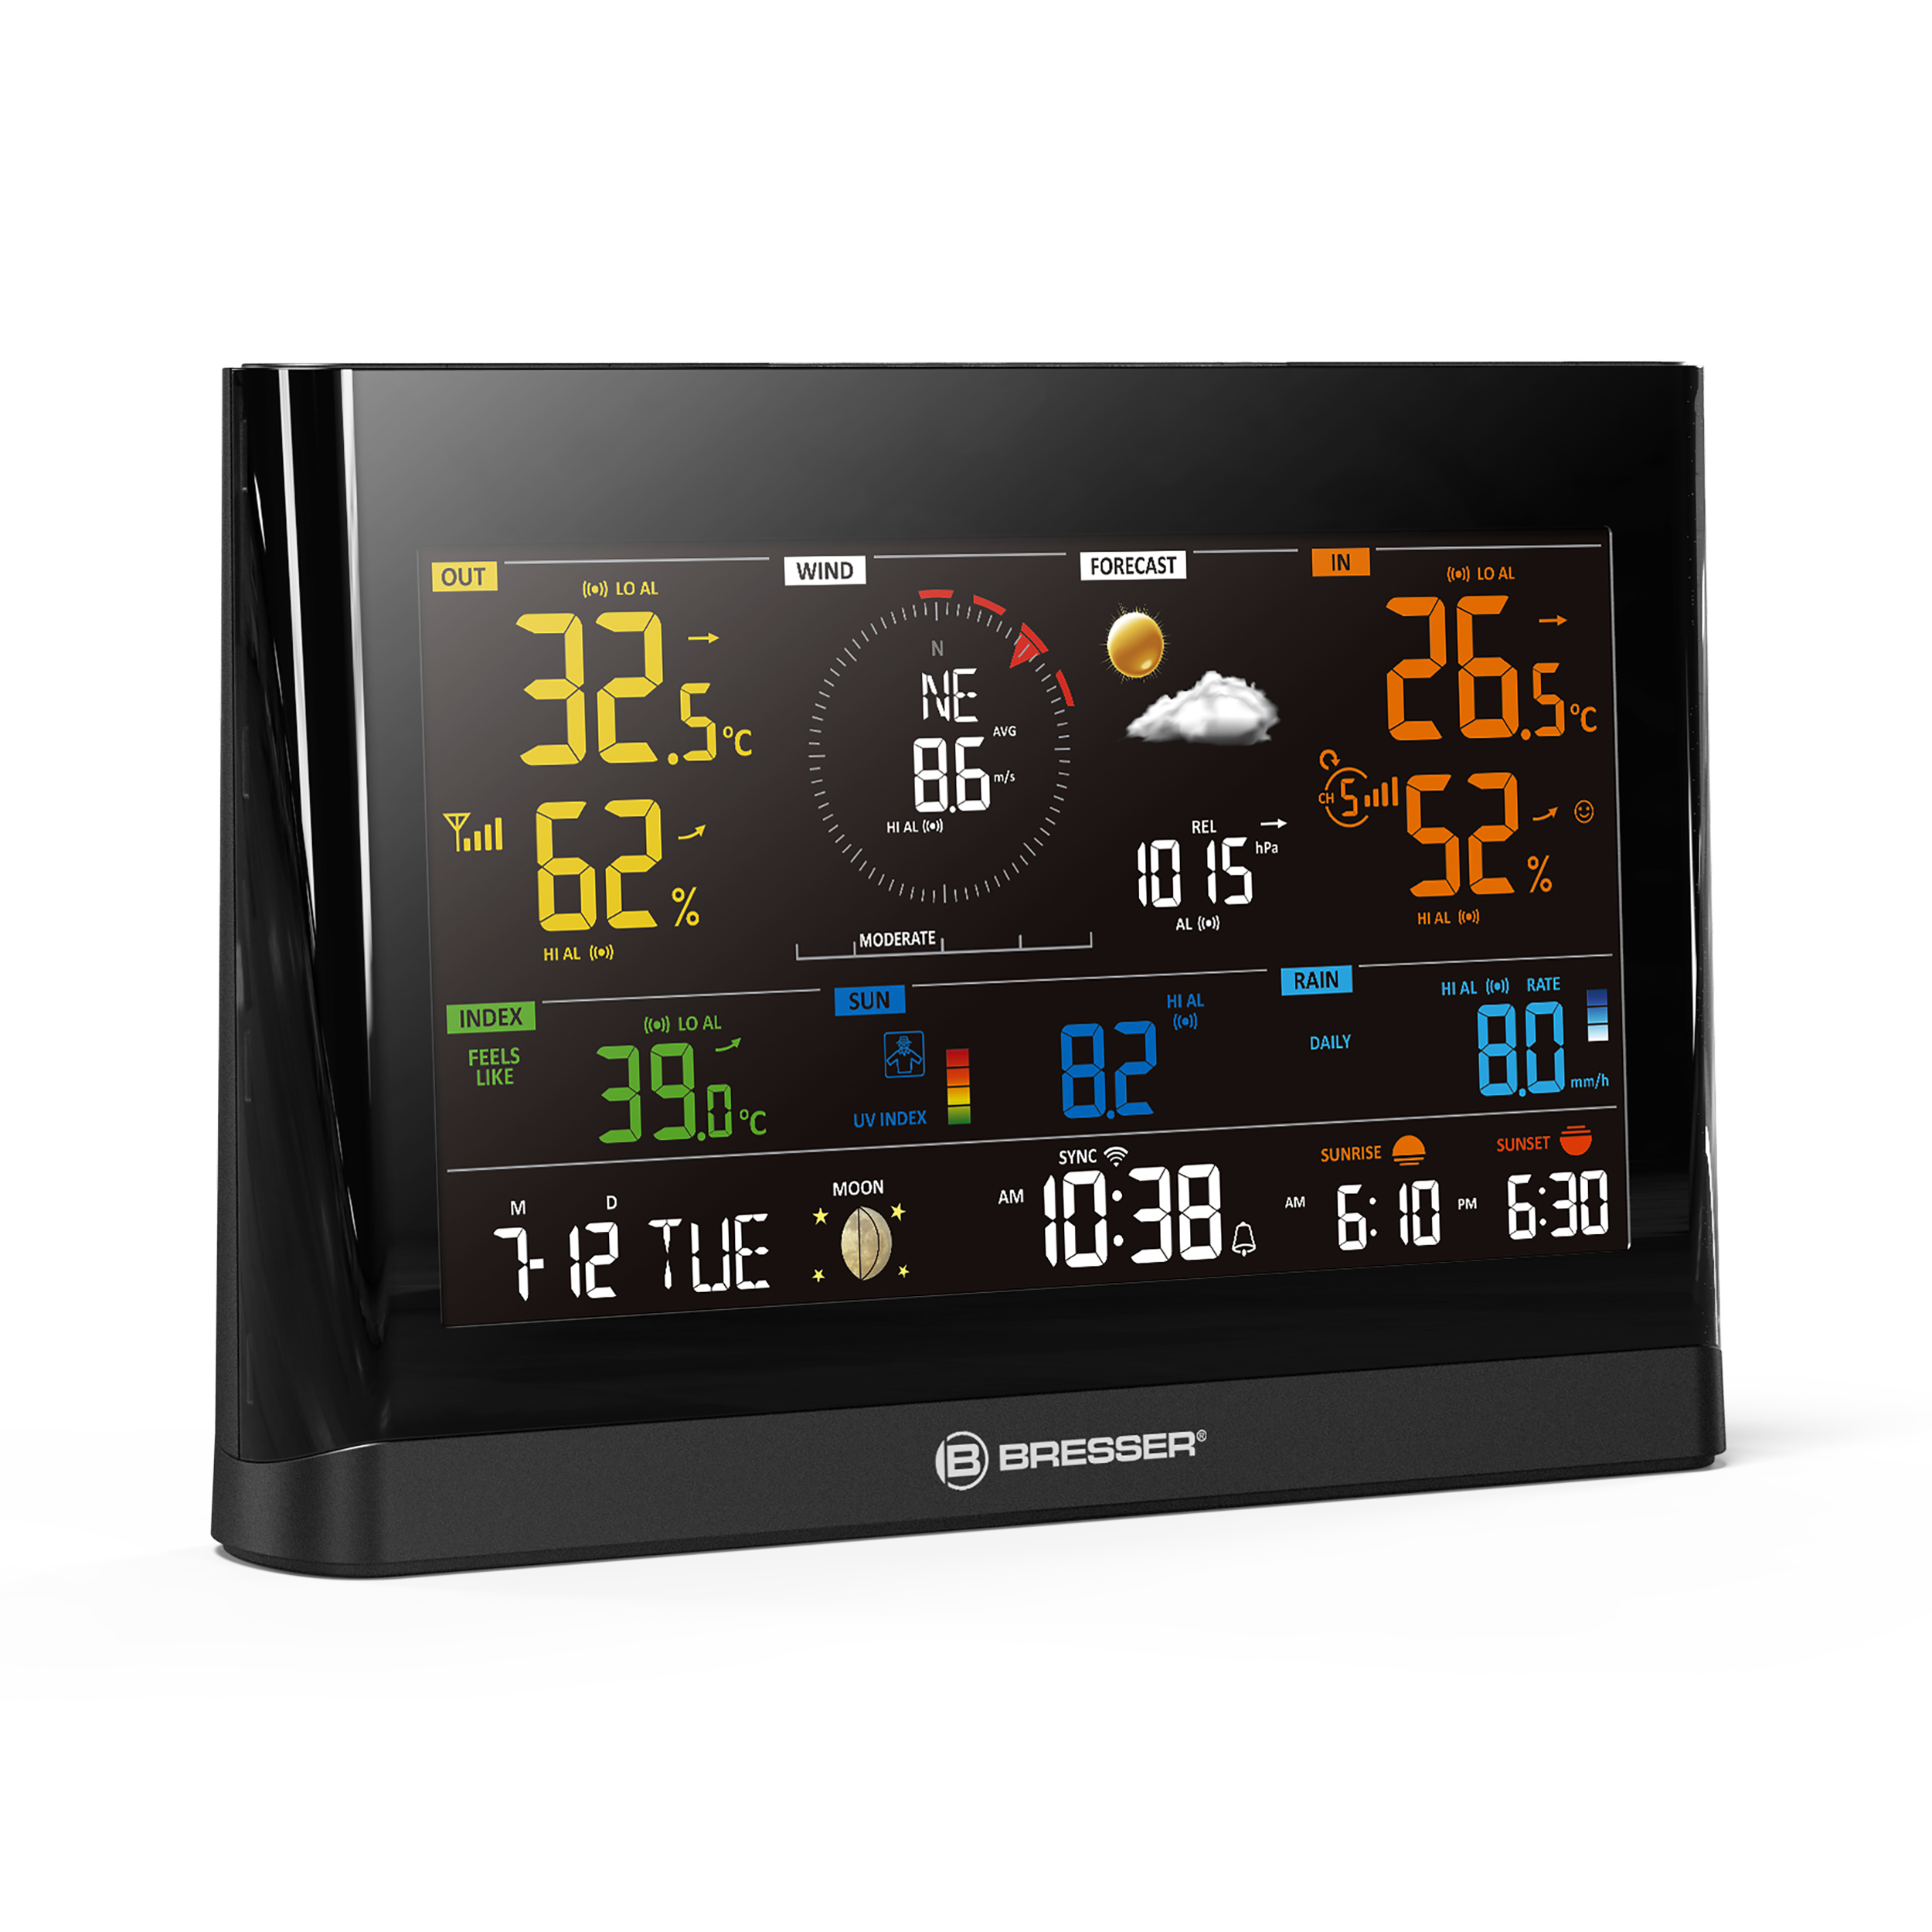 Centro meteorológico BRESSER WLAN Comfort con sensor profesional 7 en 1 y moderna pantalla a color